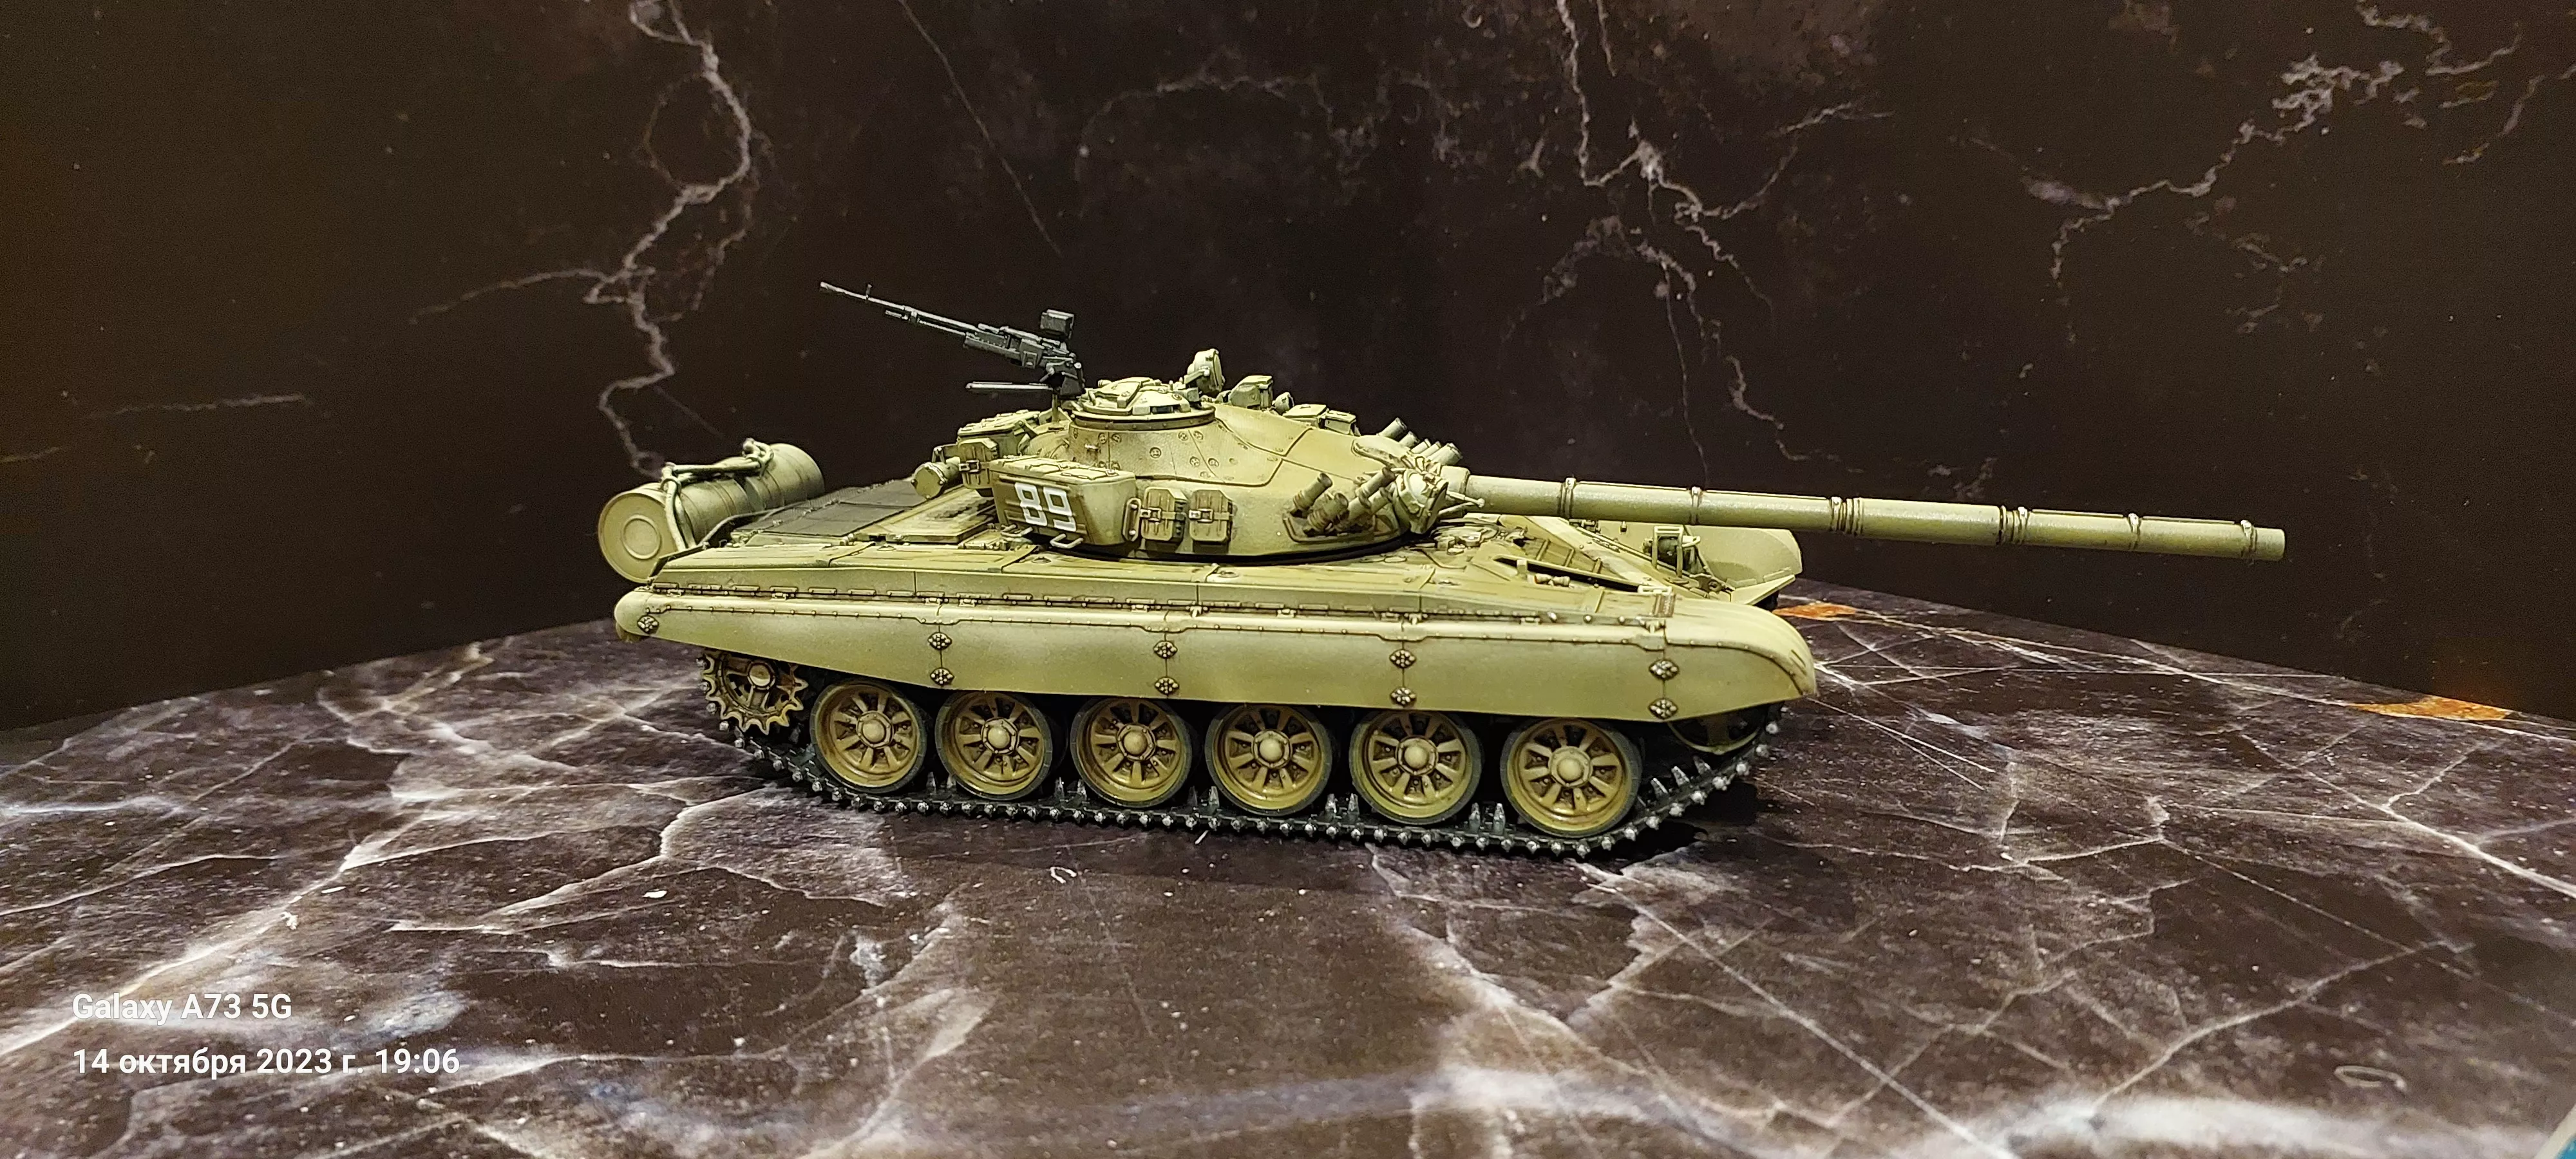 T-72A Mod 1983